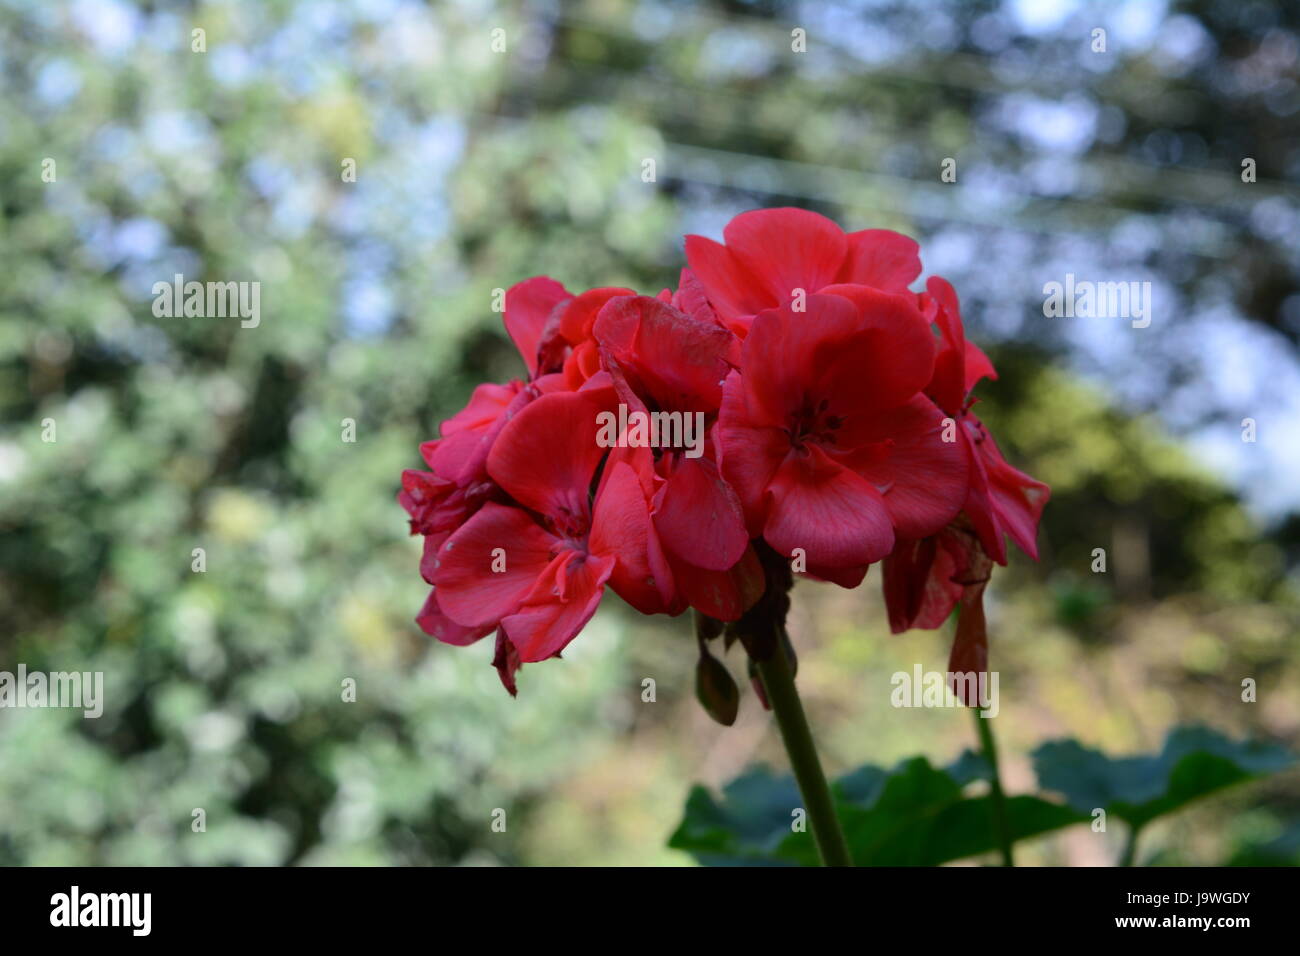 Schöne rote Blüten in einem Park von meinem Freund während gefangen waren auf einer College-Reise. Gute Beleuchtung und Fokus auf Objekt. Stockfoto